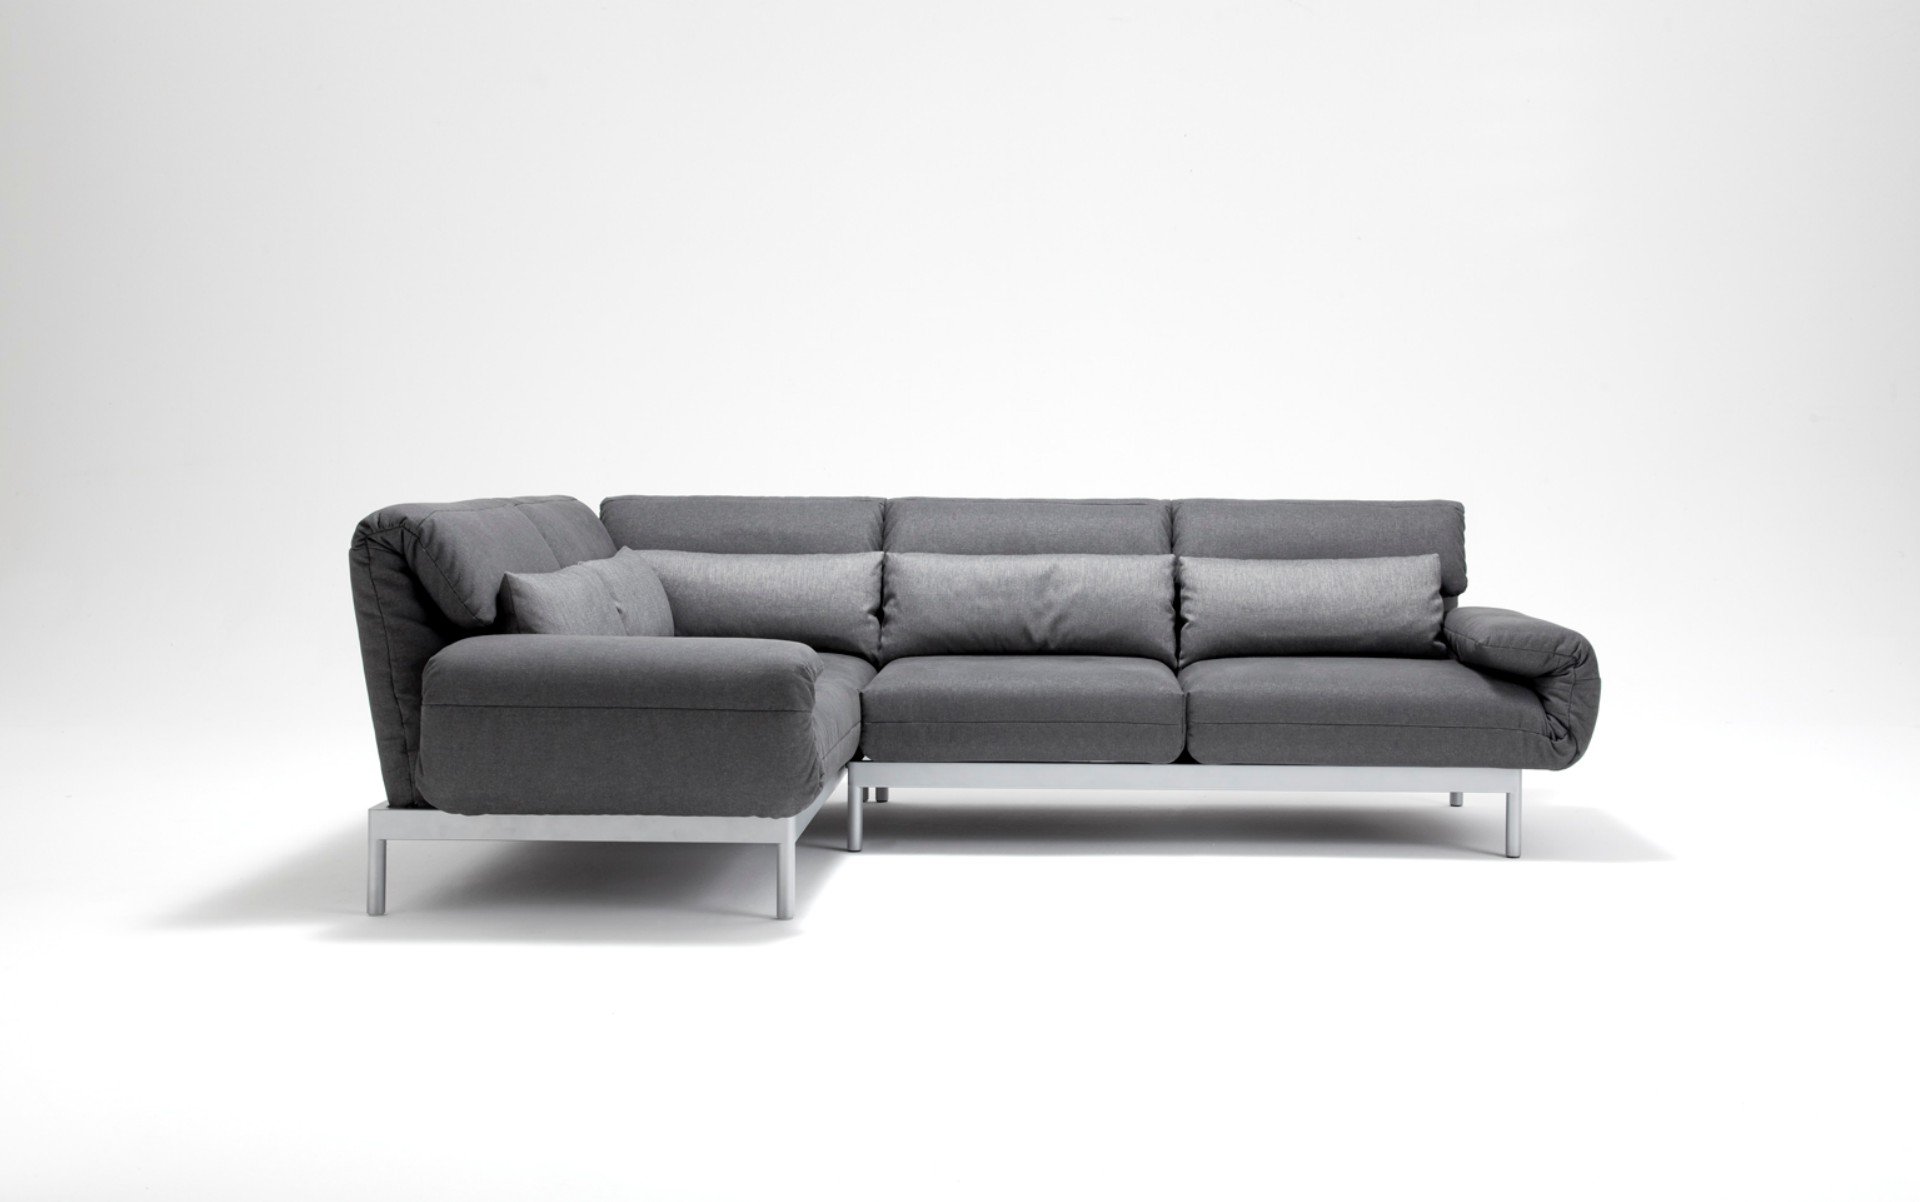 Хай диване. Rolf Benz 577. Мягкая мебель Минимализм. Мягкая мебель в стиле хайтек. Диван в минималистическом стиле.